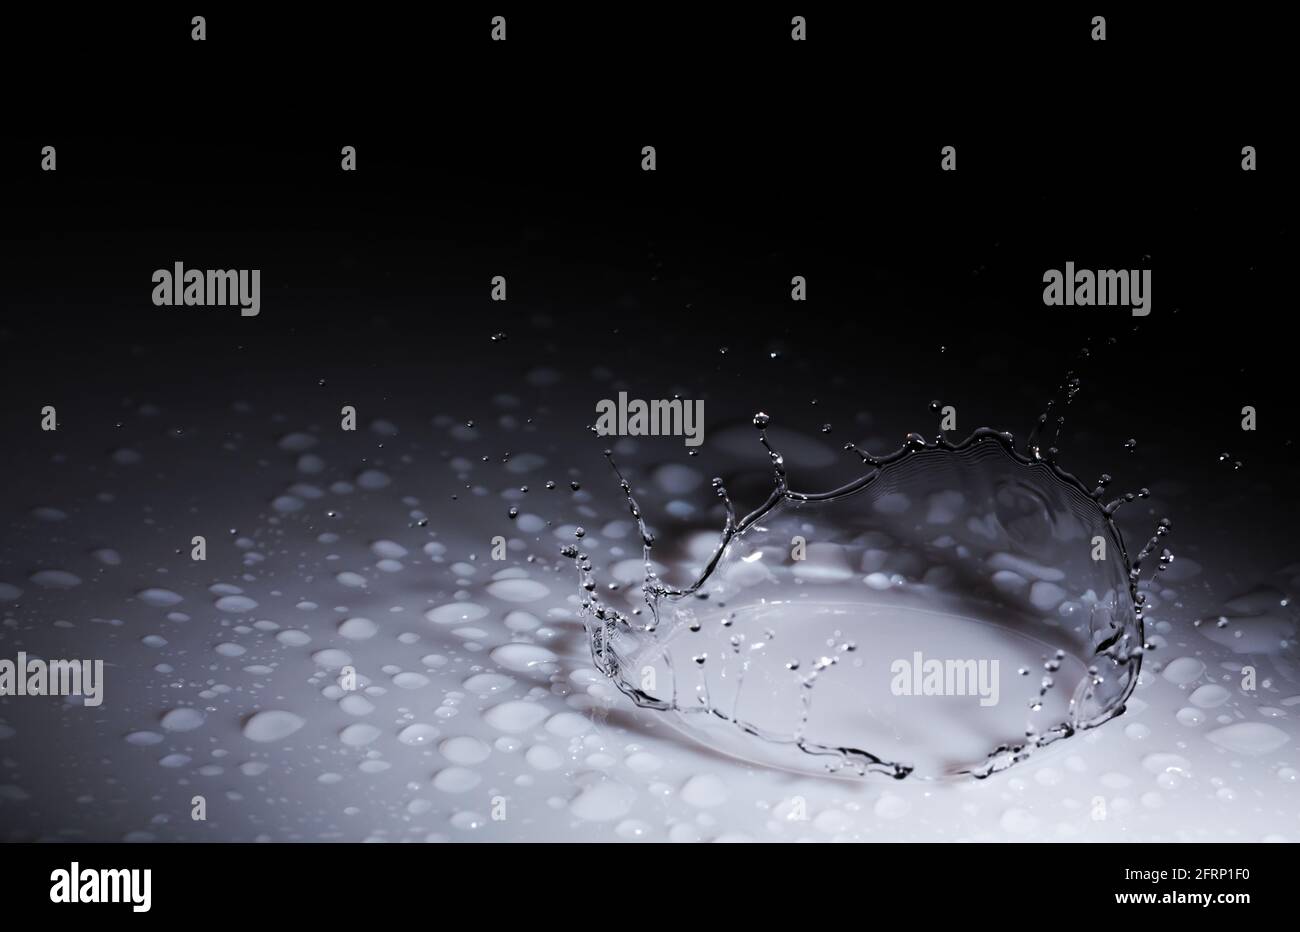 Splash Krone aus einem Tropfen Wasser fallen auf eine harte Oberfläche. Auf schwarzem Hintergrund Stockfoto